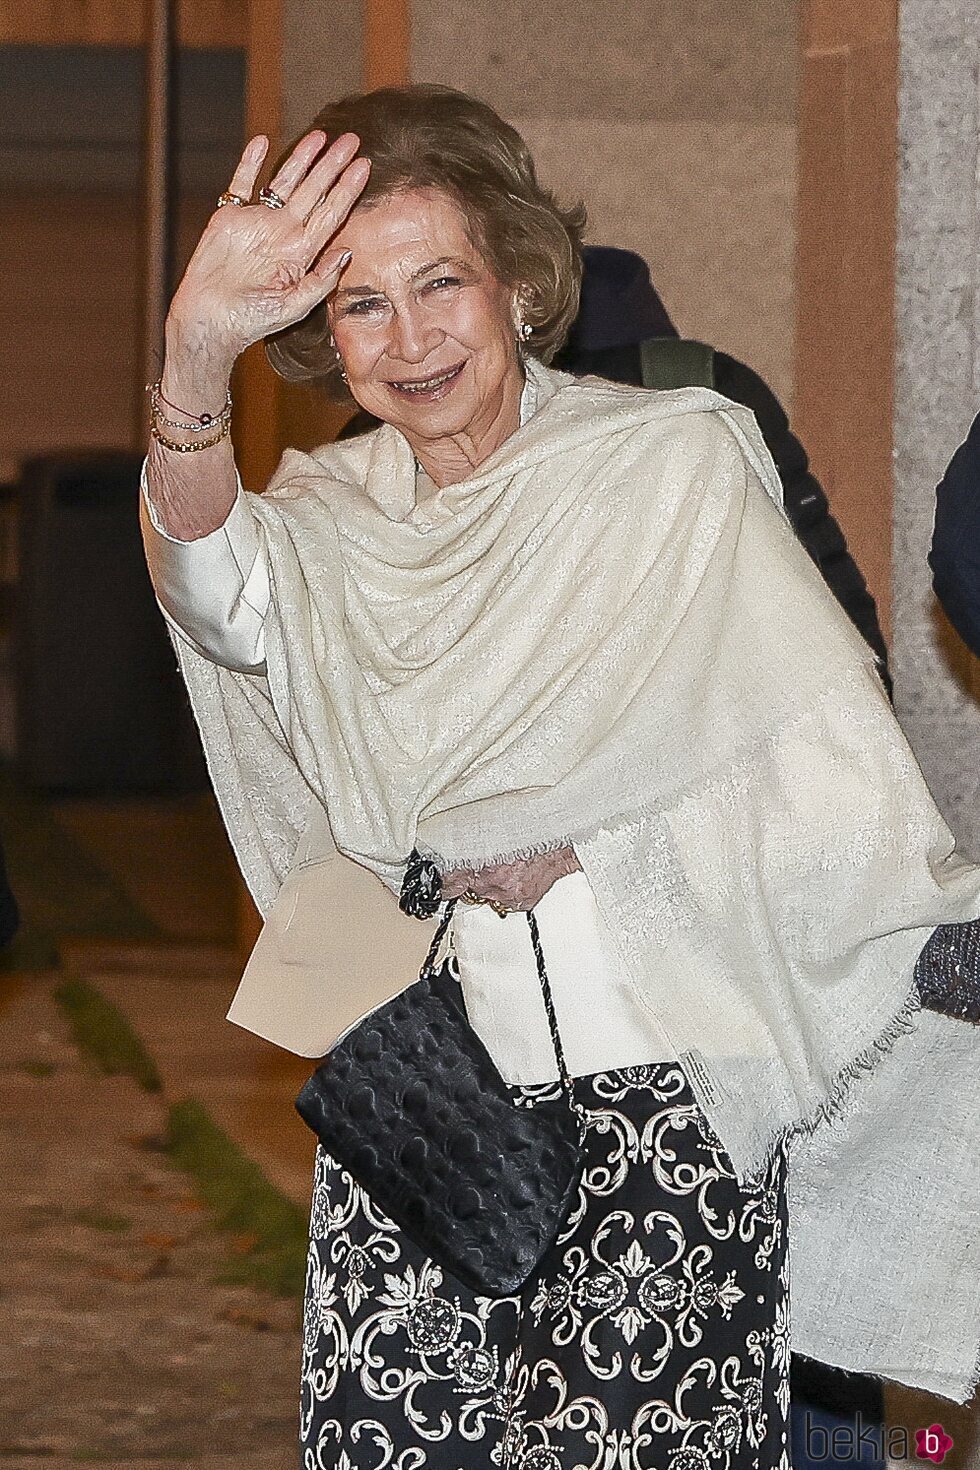 La Reina Sofía tras el concierto de Zubin Mehta en Madrid